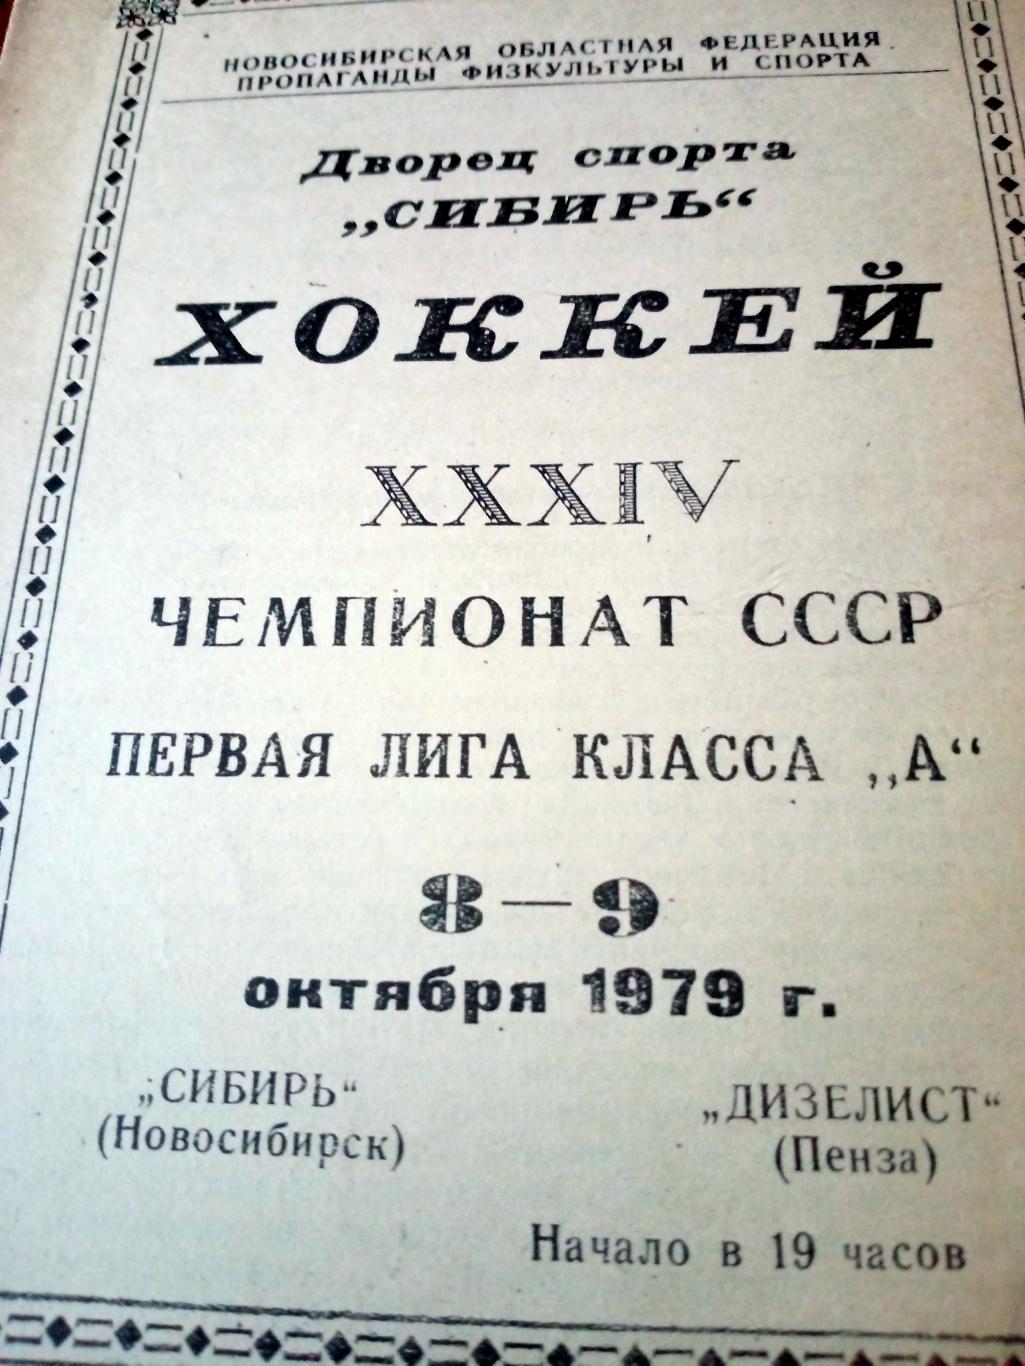 Сибирь Новосибирск - Дизелист Пенза. 8 и 9 октября 1979 год